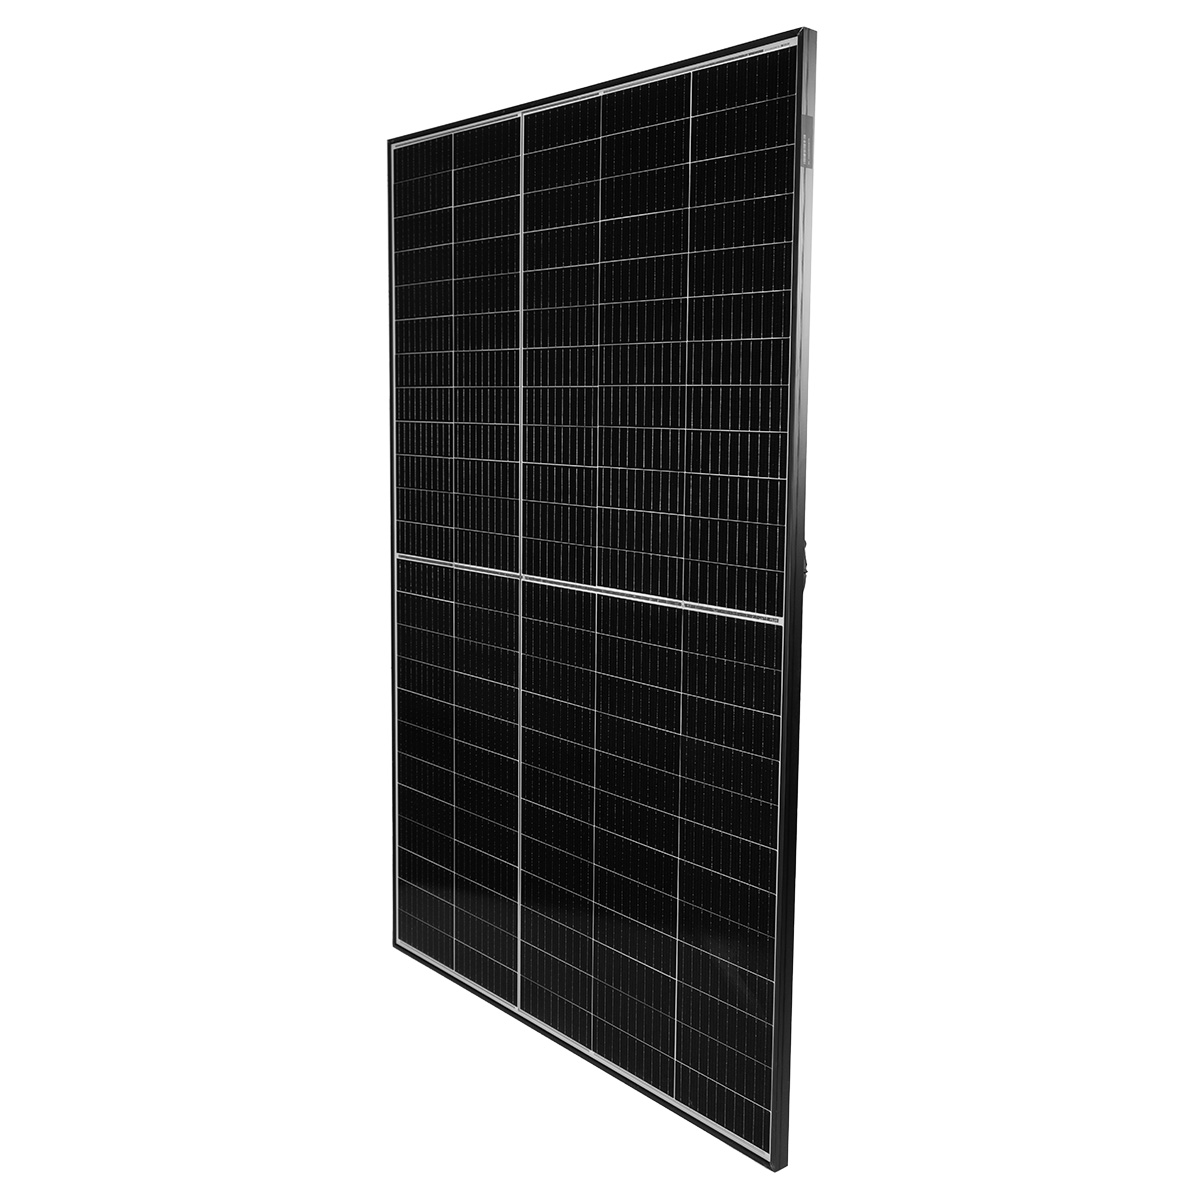 Trinasolar Vertex S Mono 405 Watt Solarmodul für Photovoltaik-Anlagen